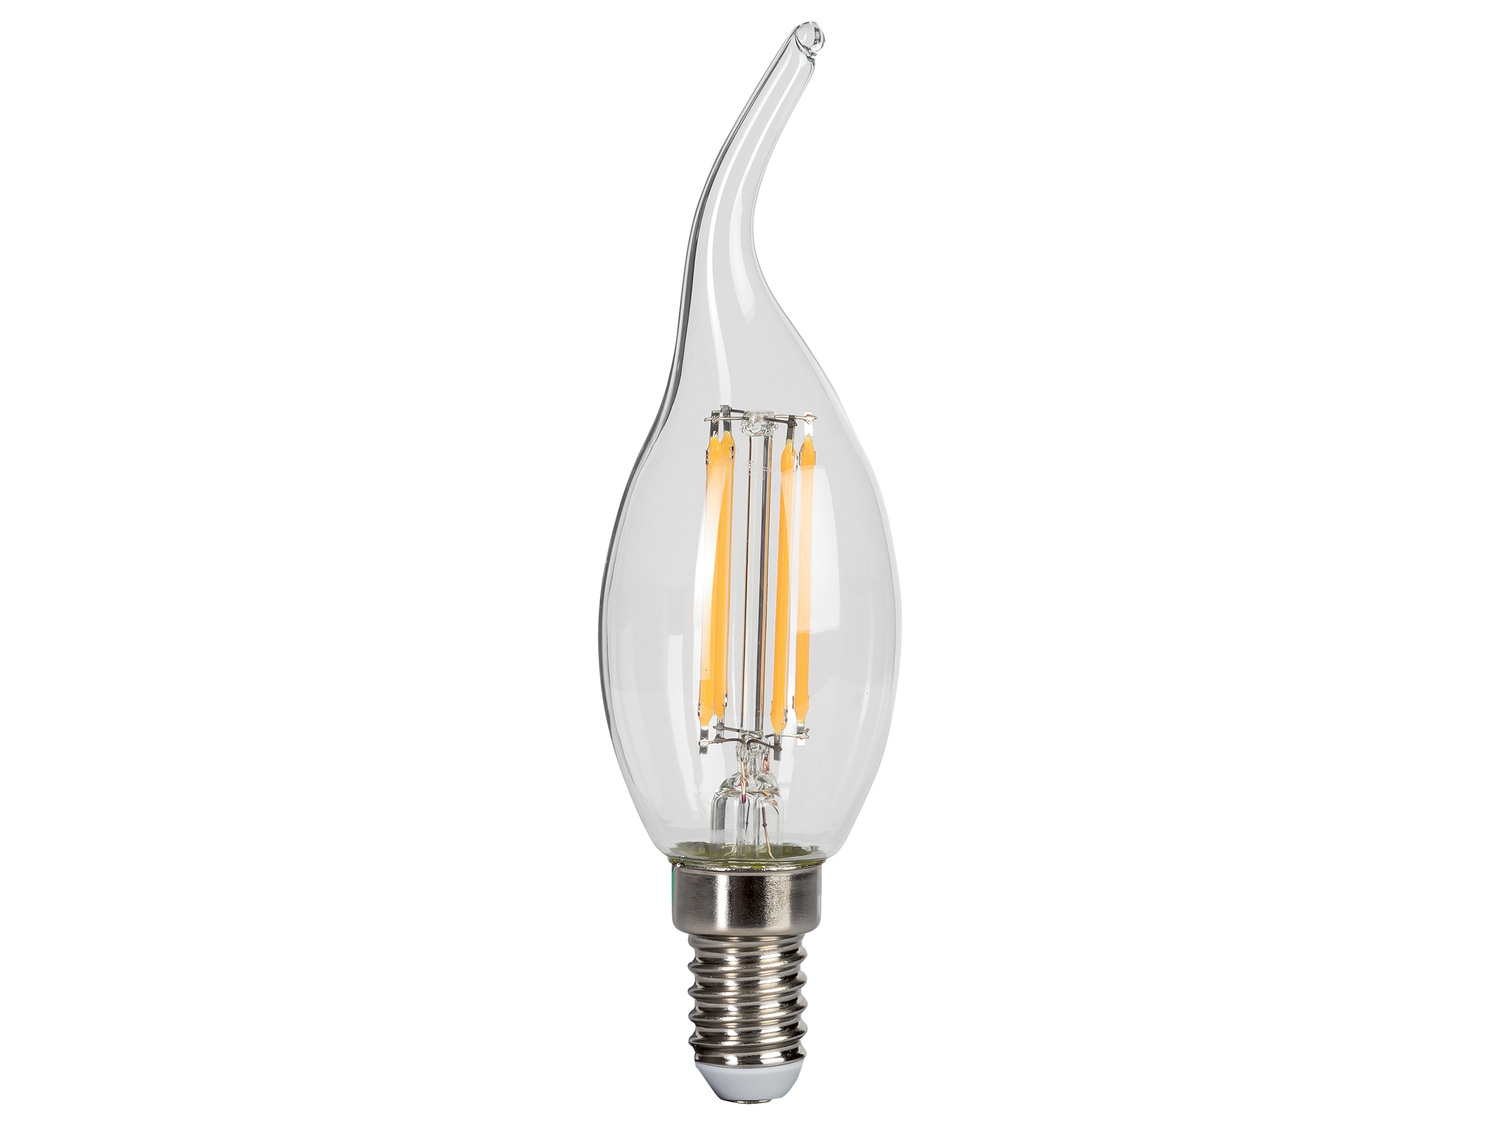 Ampoule LED à filament , le prix 1.99 &#8364; 
Au choix :
- E27, light : 4,7 ...